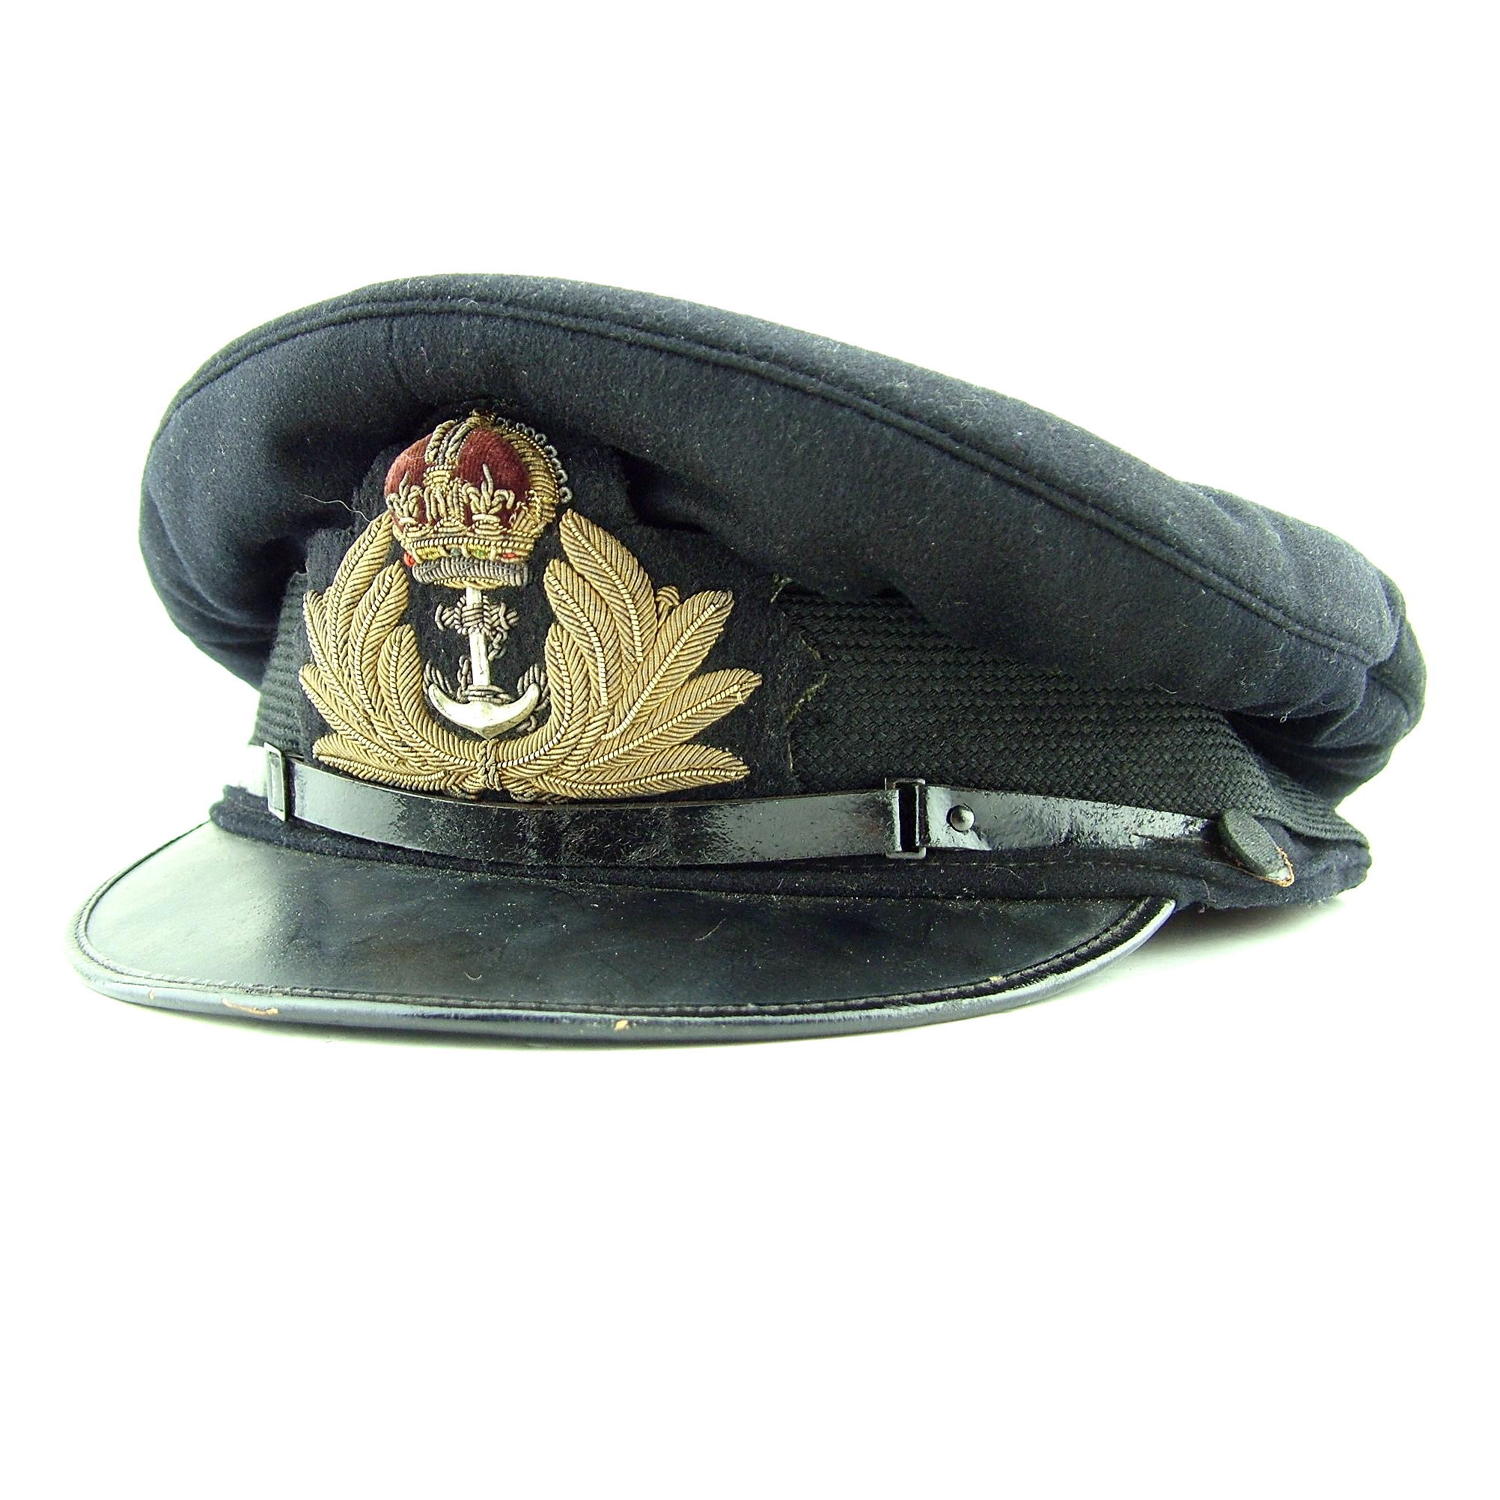 RN / FAA officer rank service dress cap